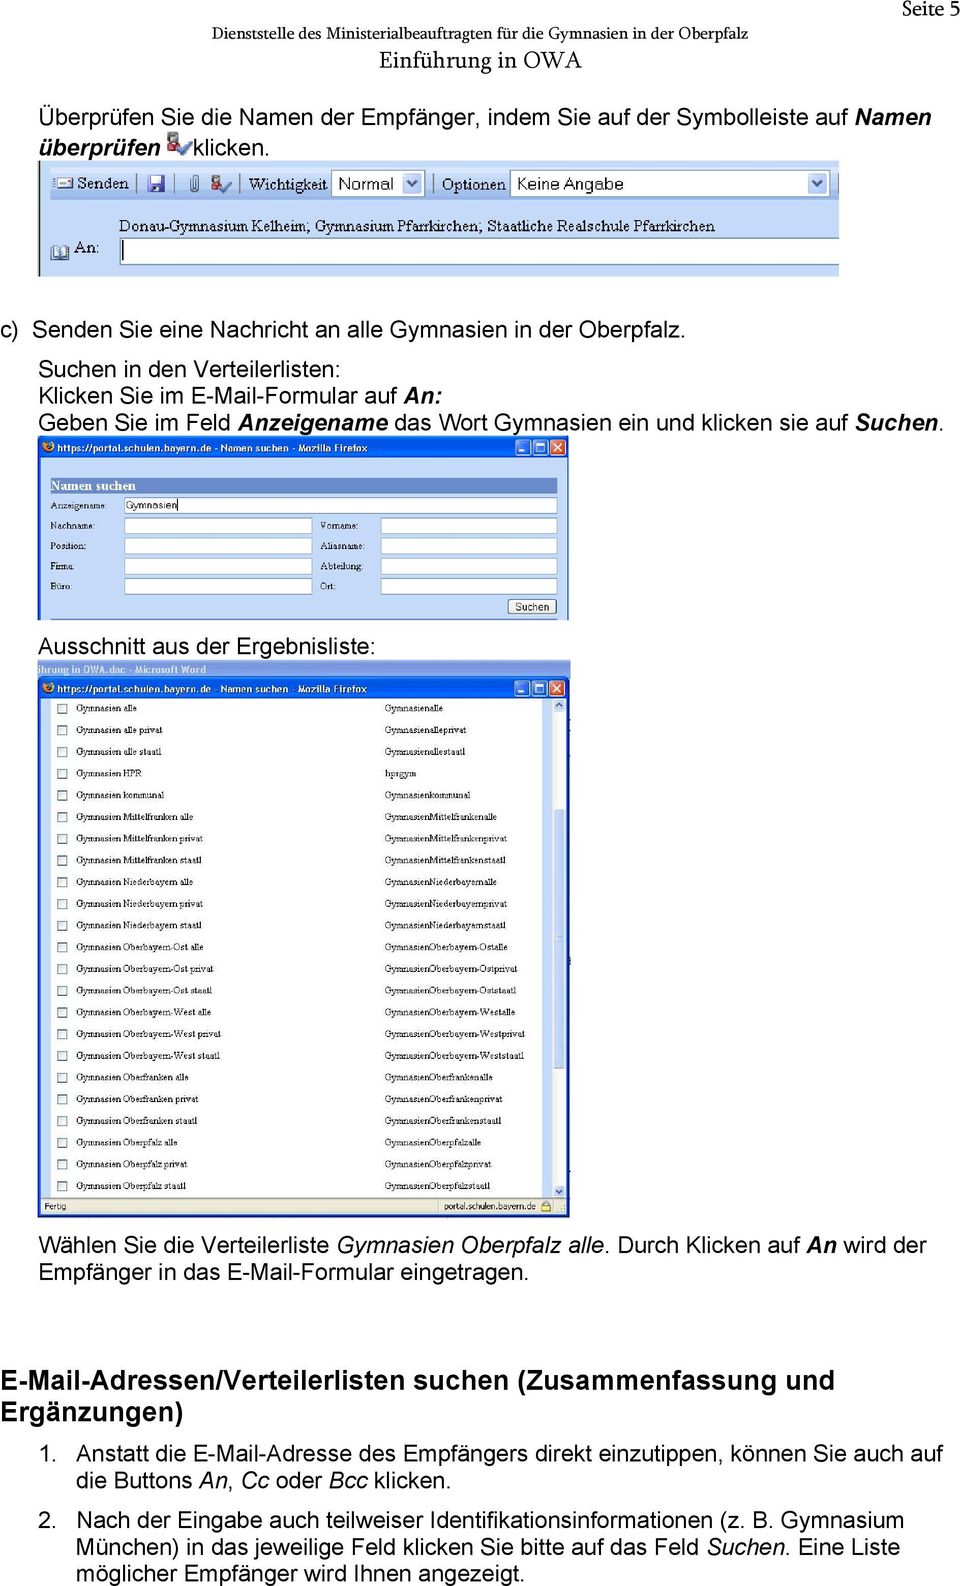 Ausschnitt aus der Ergebnisliste: Wählen Sie die Verteilerliste Gymnasien Oberpfalz alle. Durch Klicken auf An wird der Empfänger in das E-Mail-Formular eingetragen.